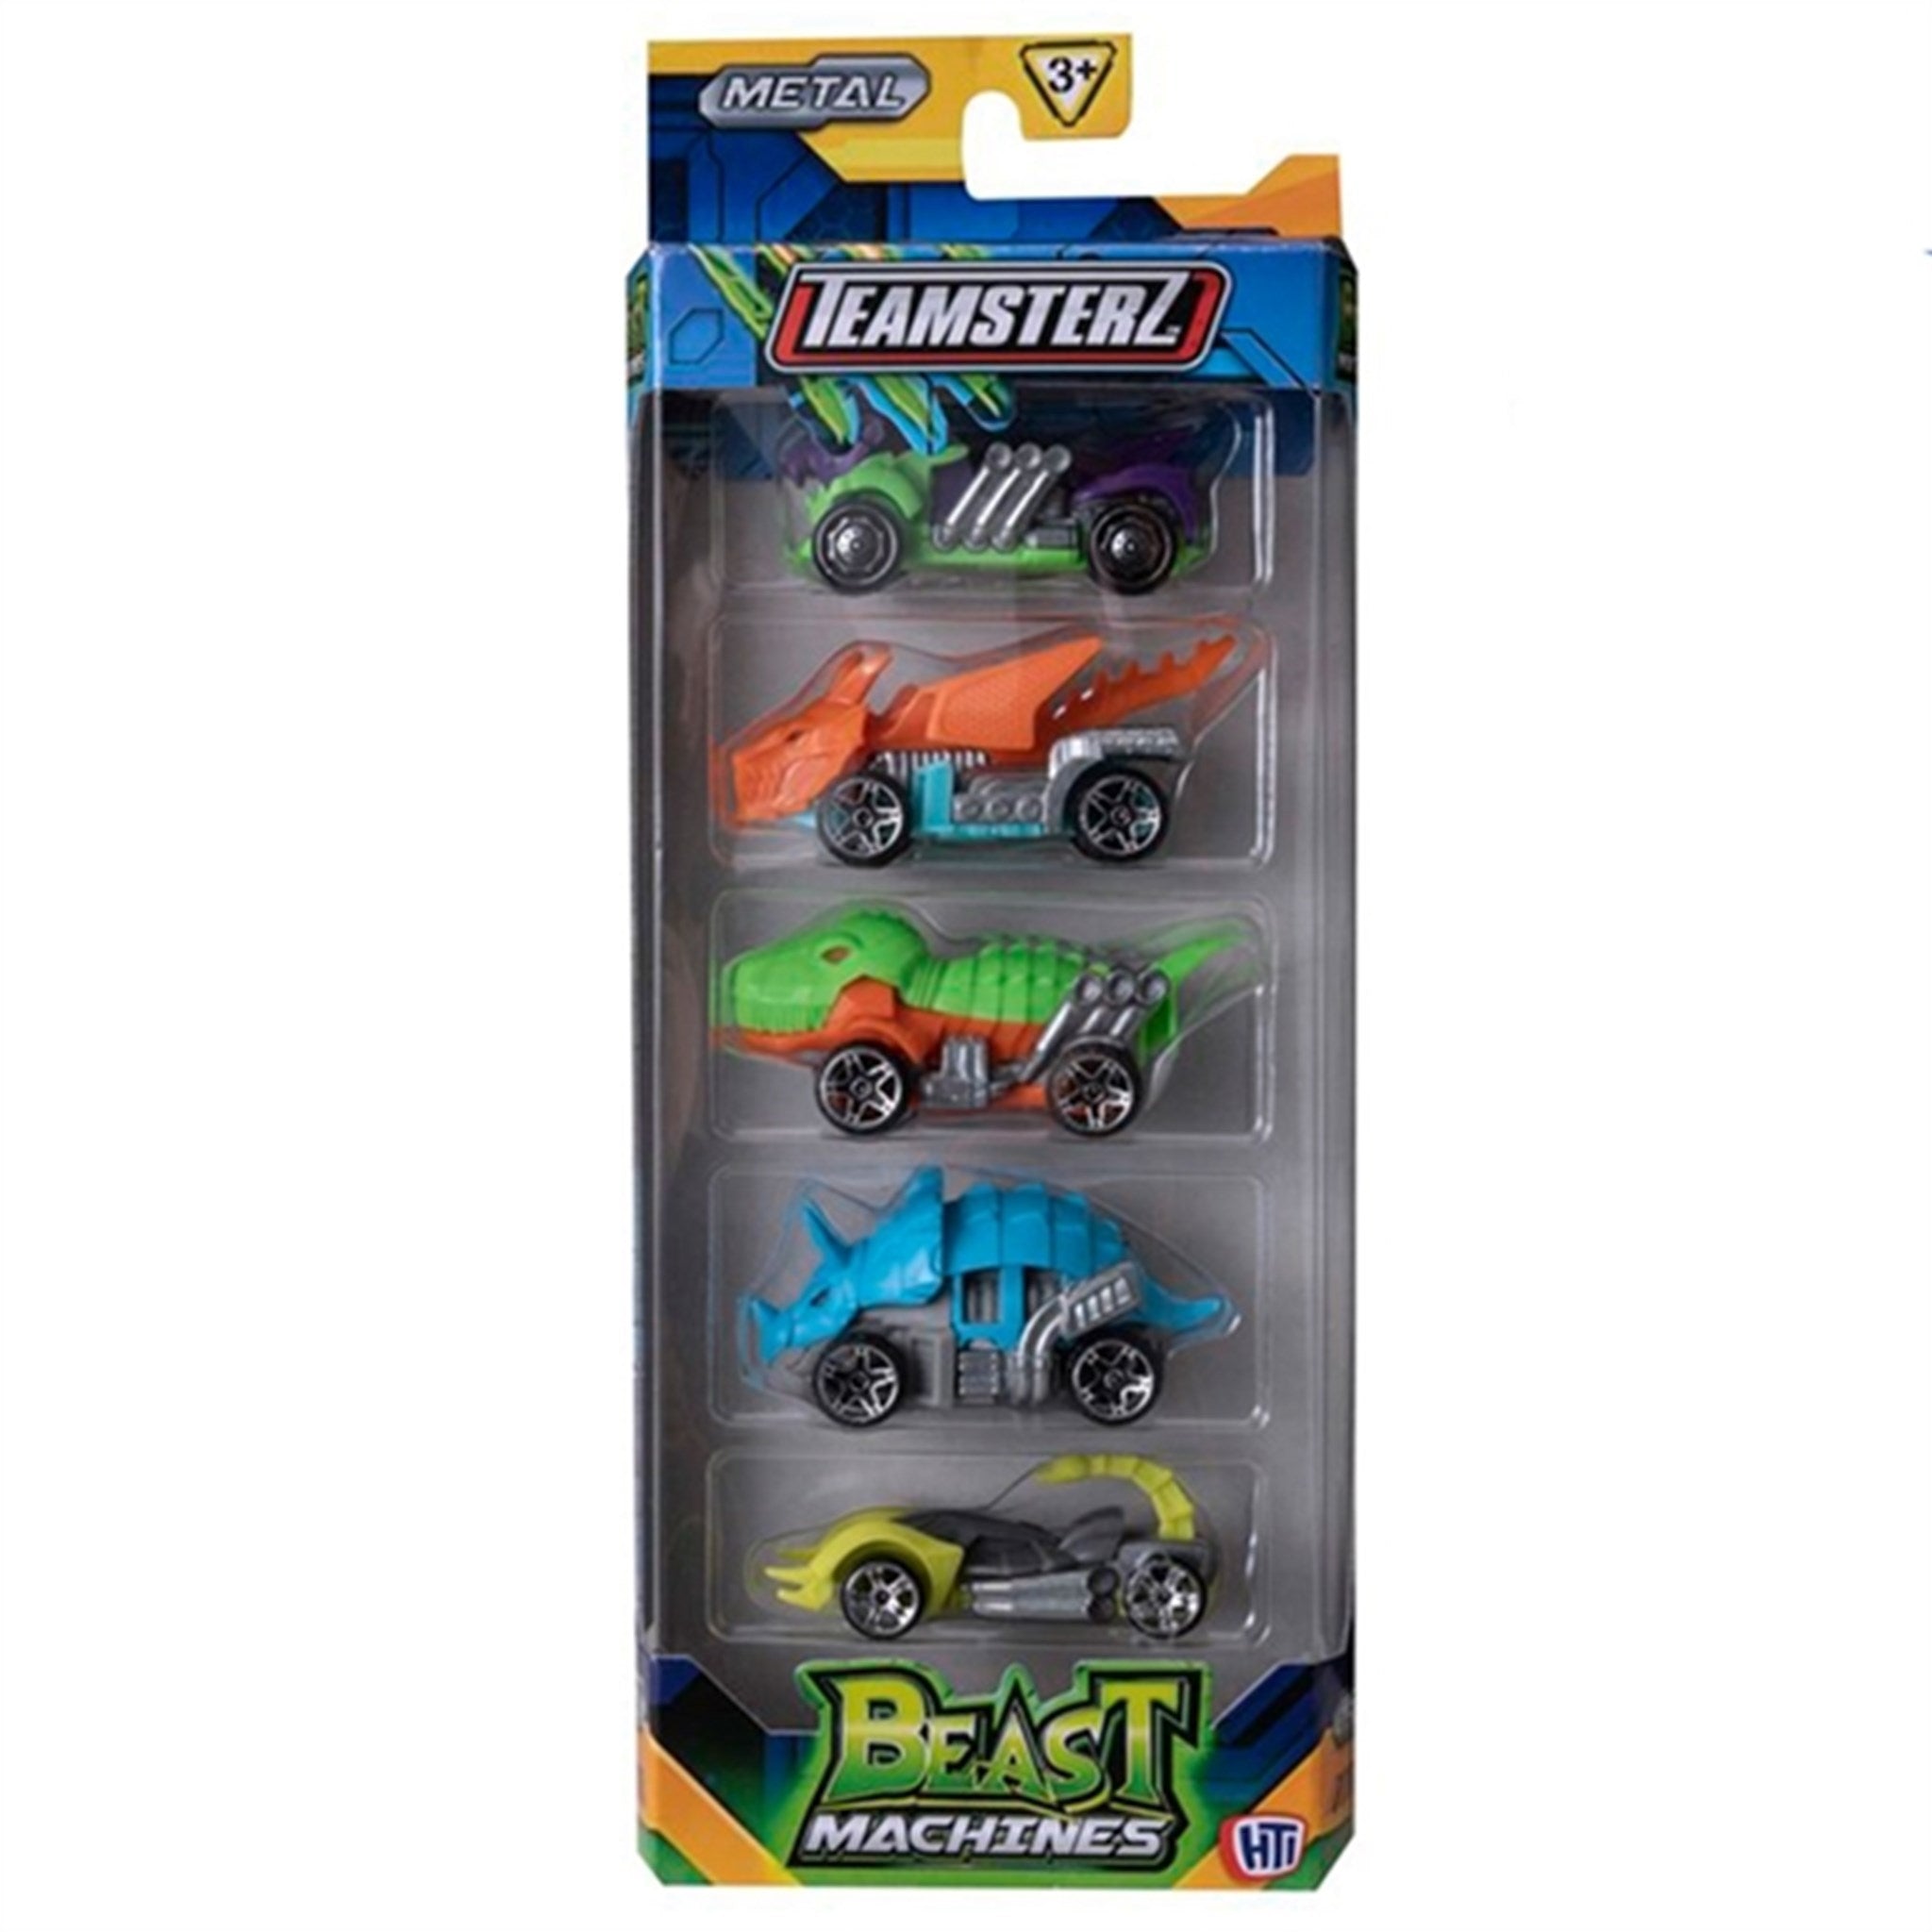 Teamsterz Beast Machine Die-Cast Cars 5-pack